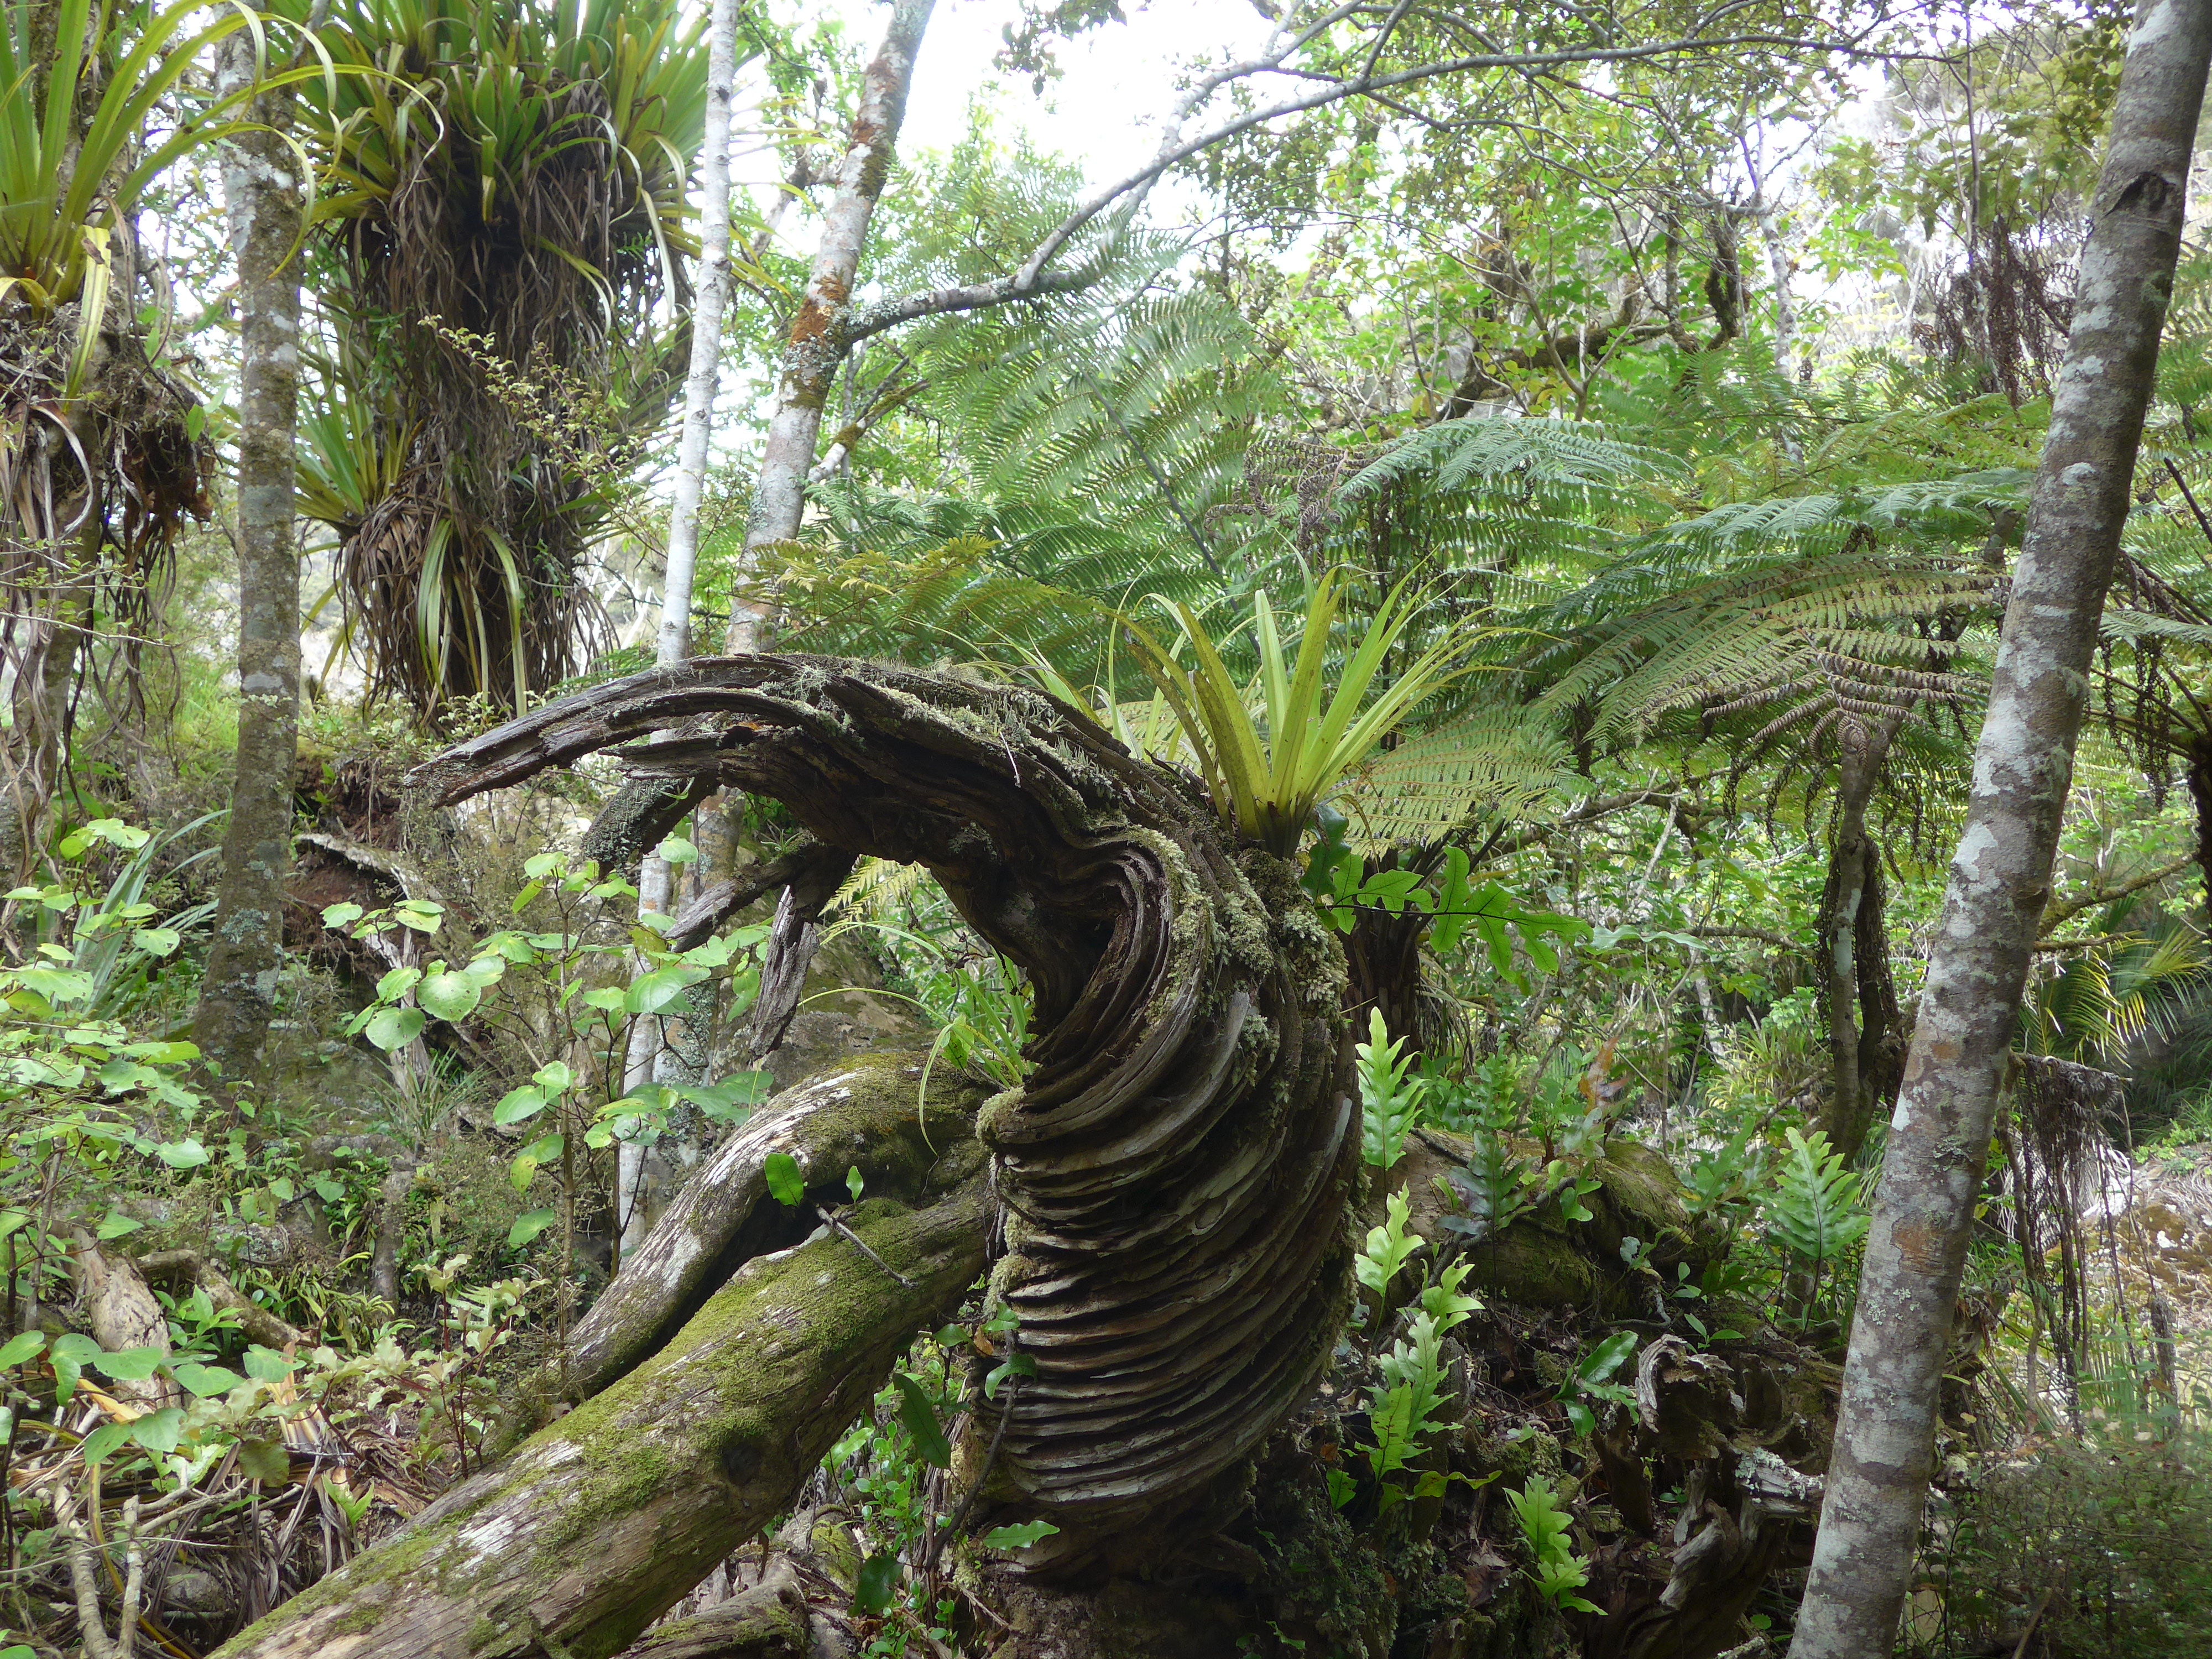 Alle Botaniker müssen NZ eigentlich lieben - hier gibt es wahrscheinlich so ziemlich alle Gewächse, die man irgendwo finden kann :)